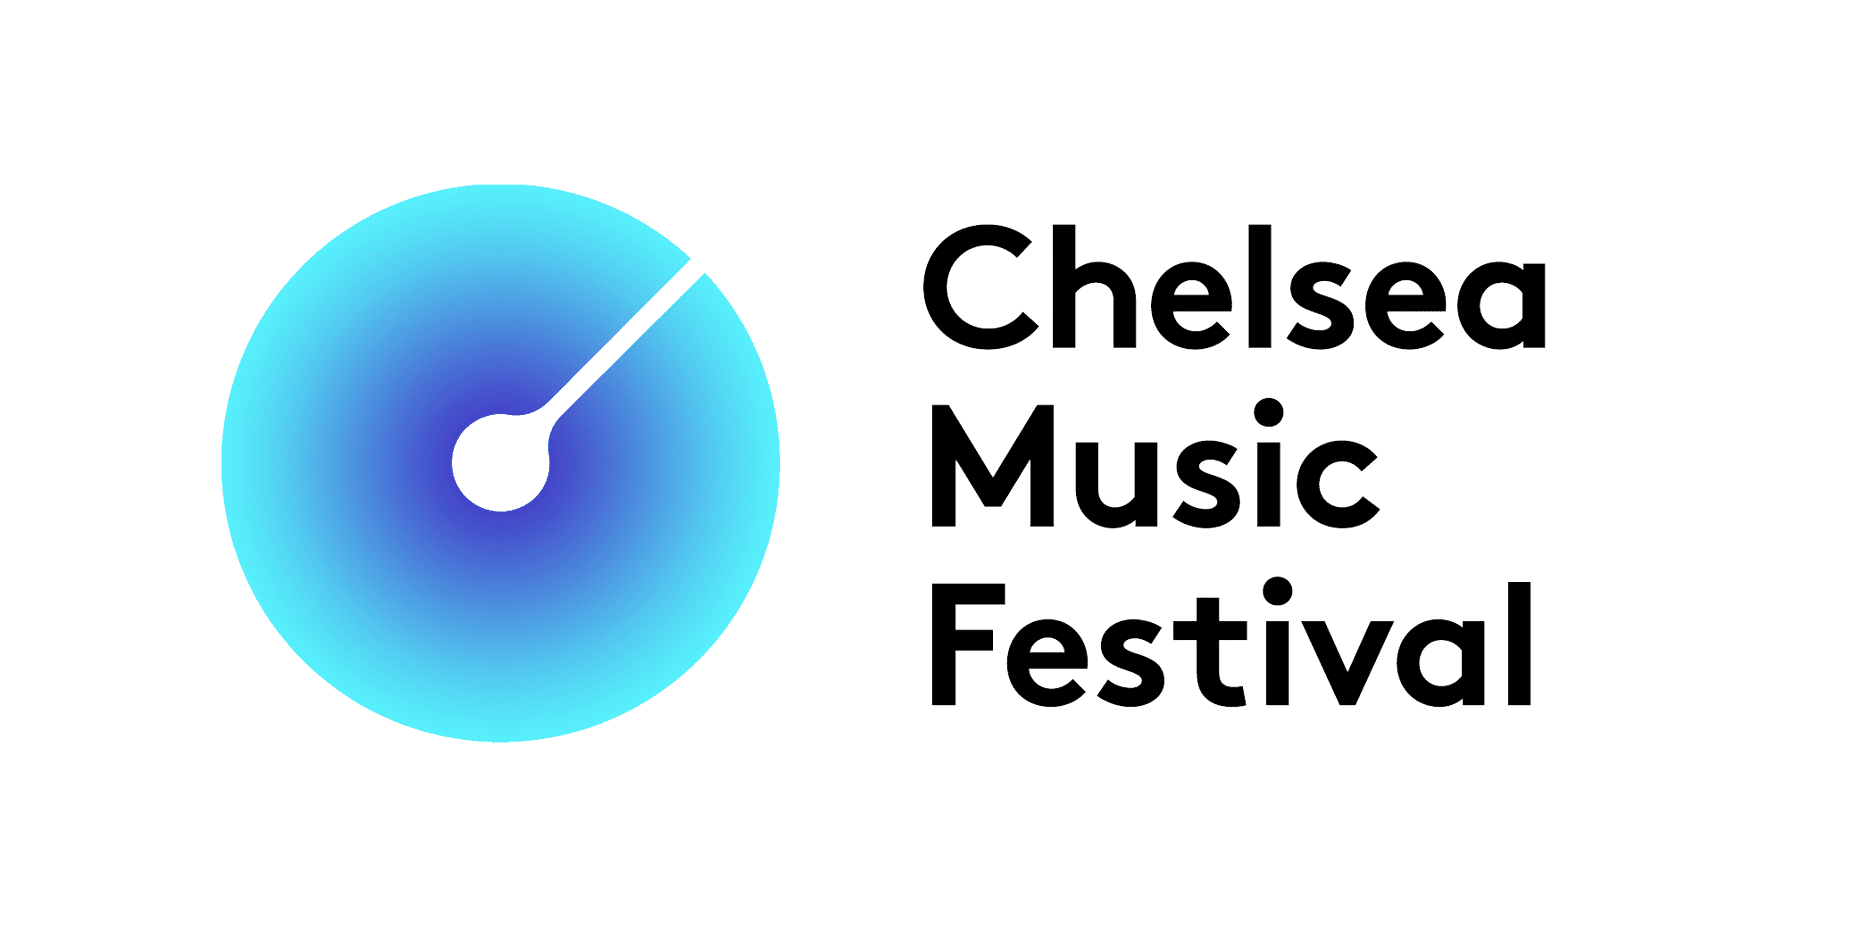 Chelsea Music Festival